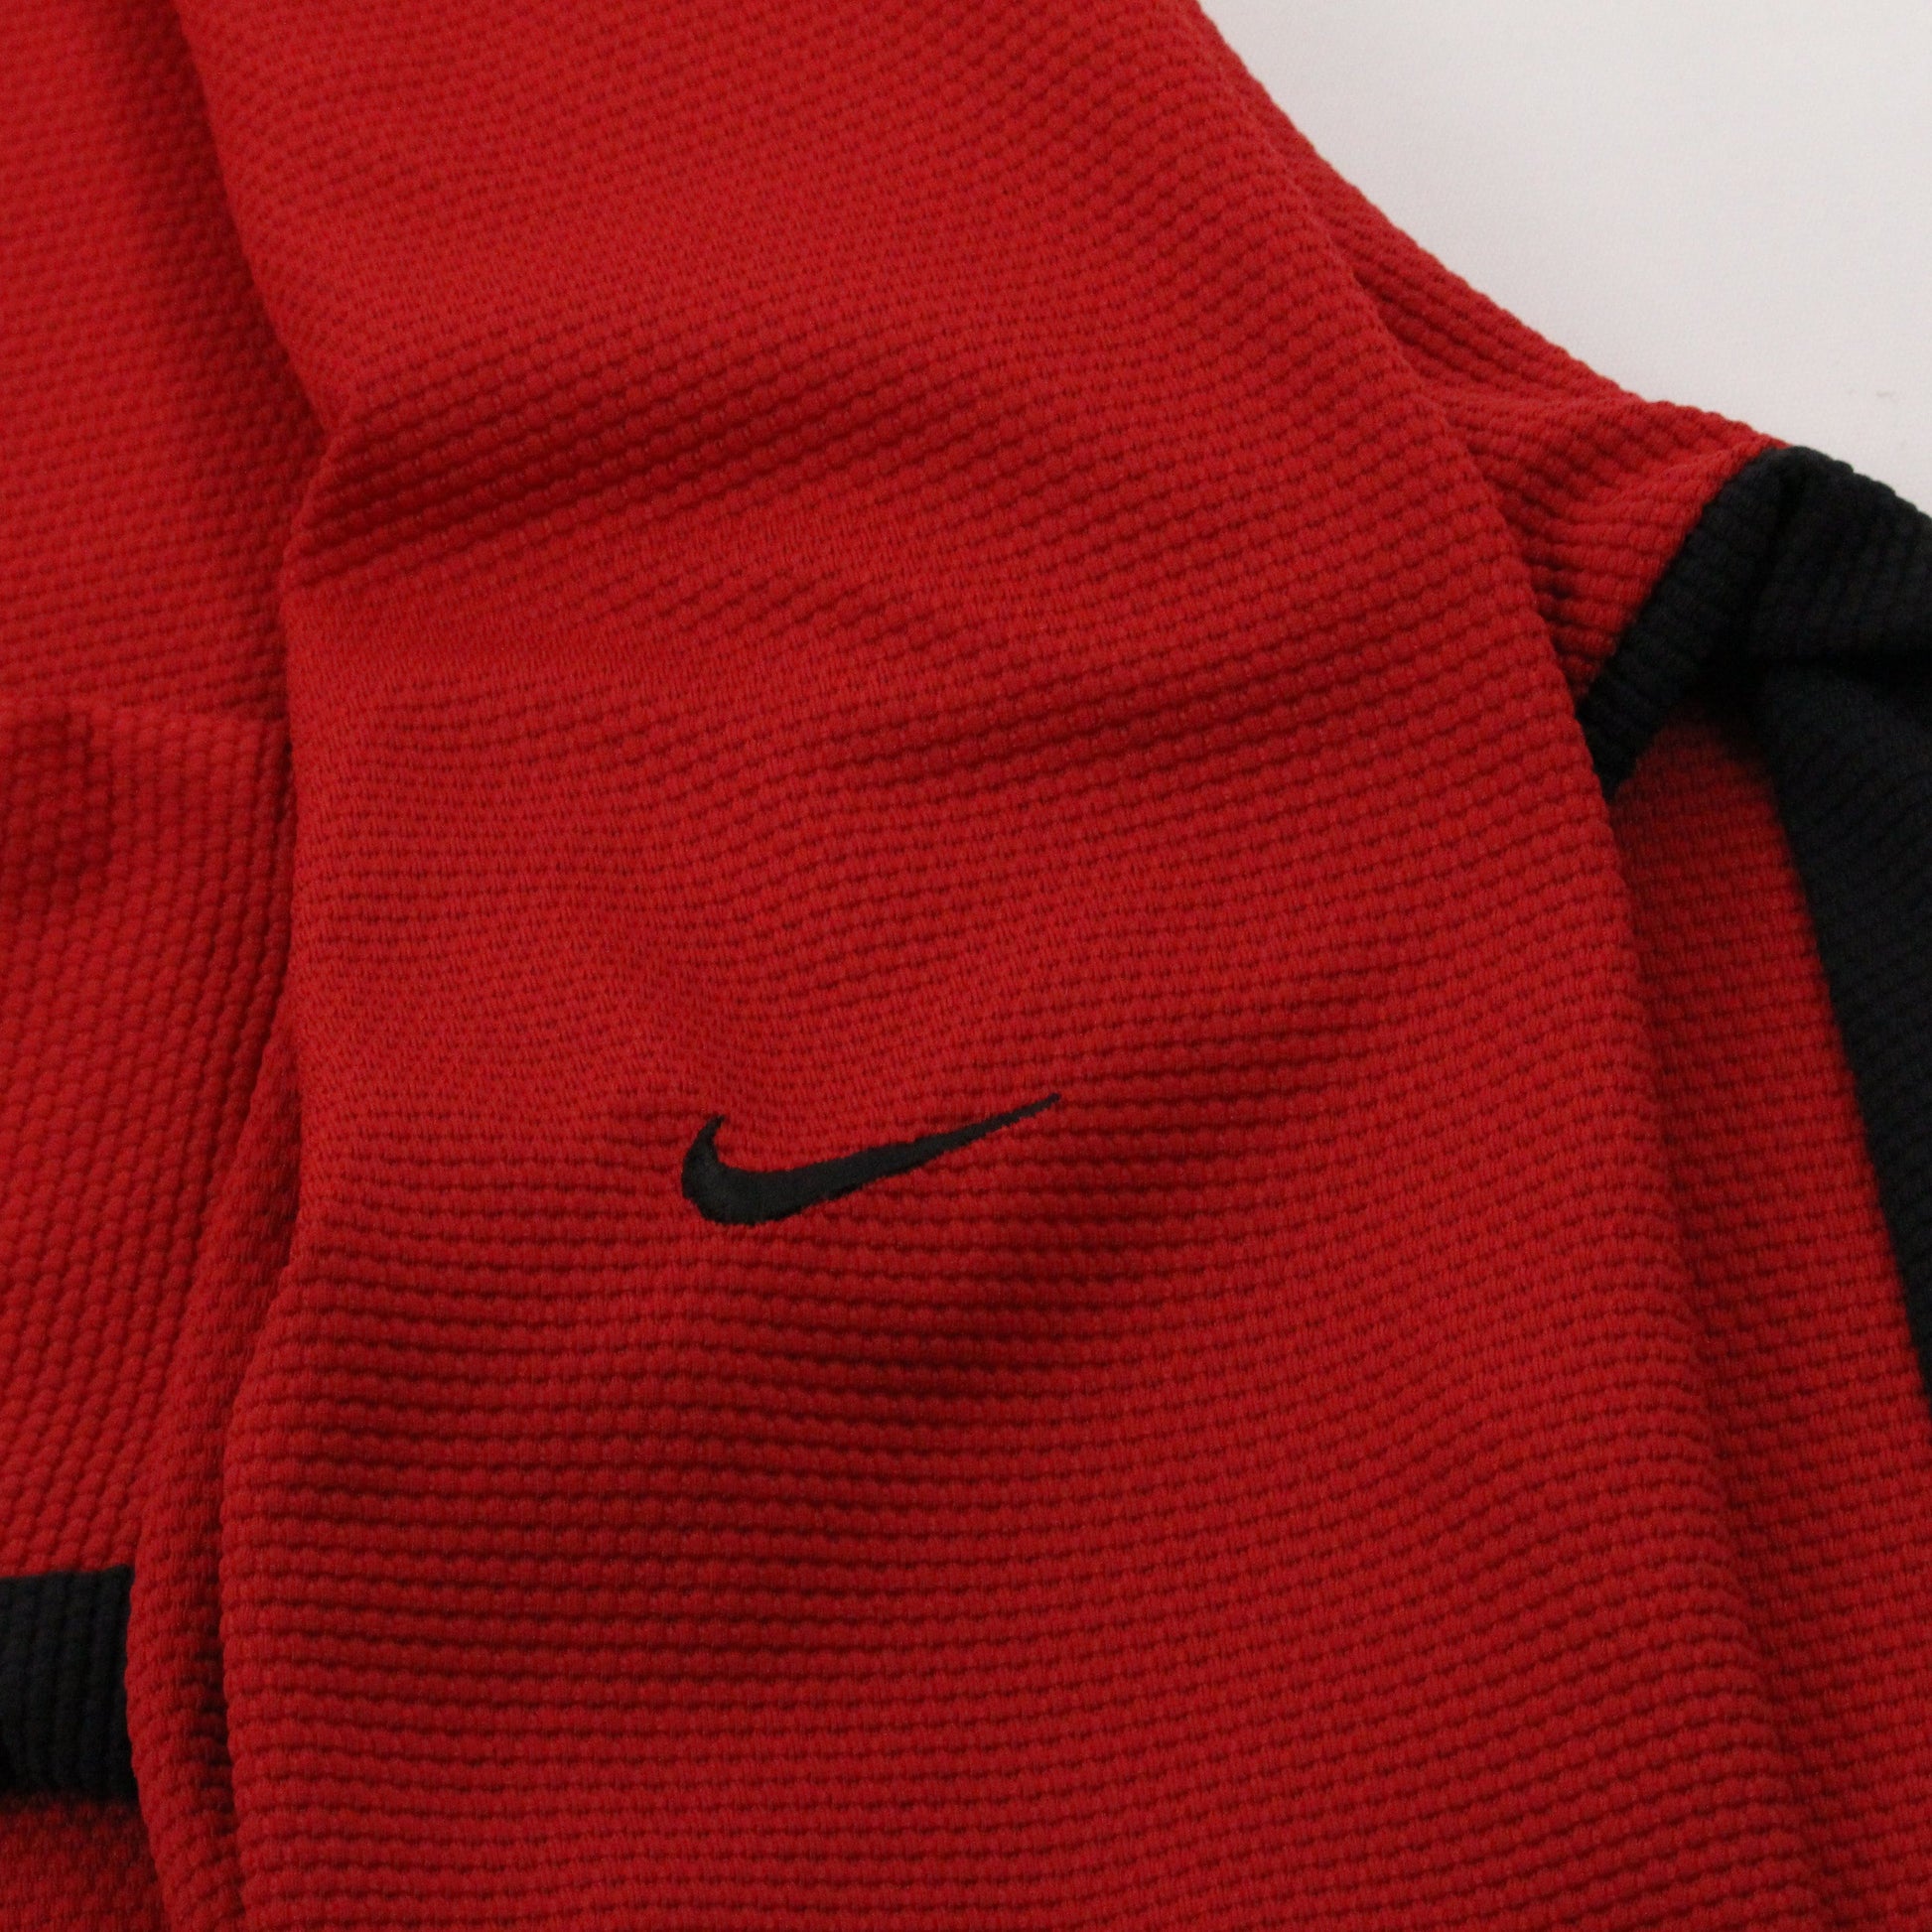 Nike Nike Sphere Dry Longsleeve Jersey T Shirt Size 2XL